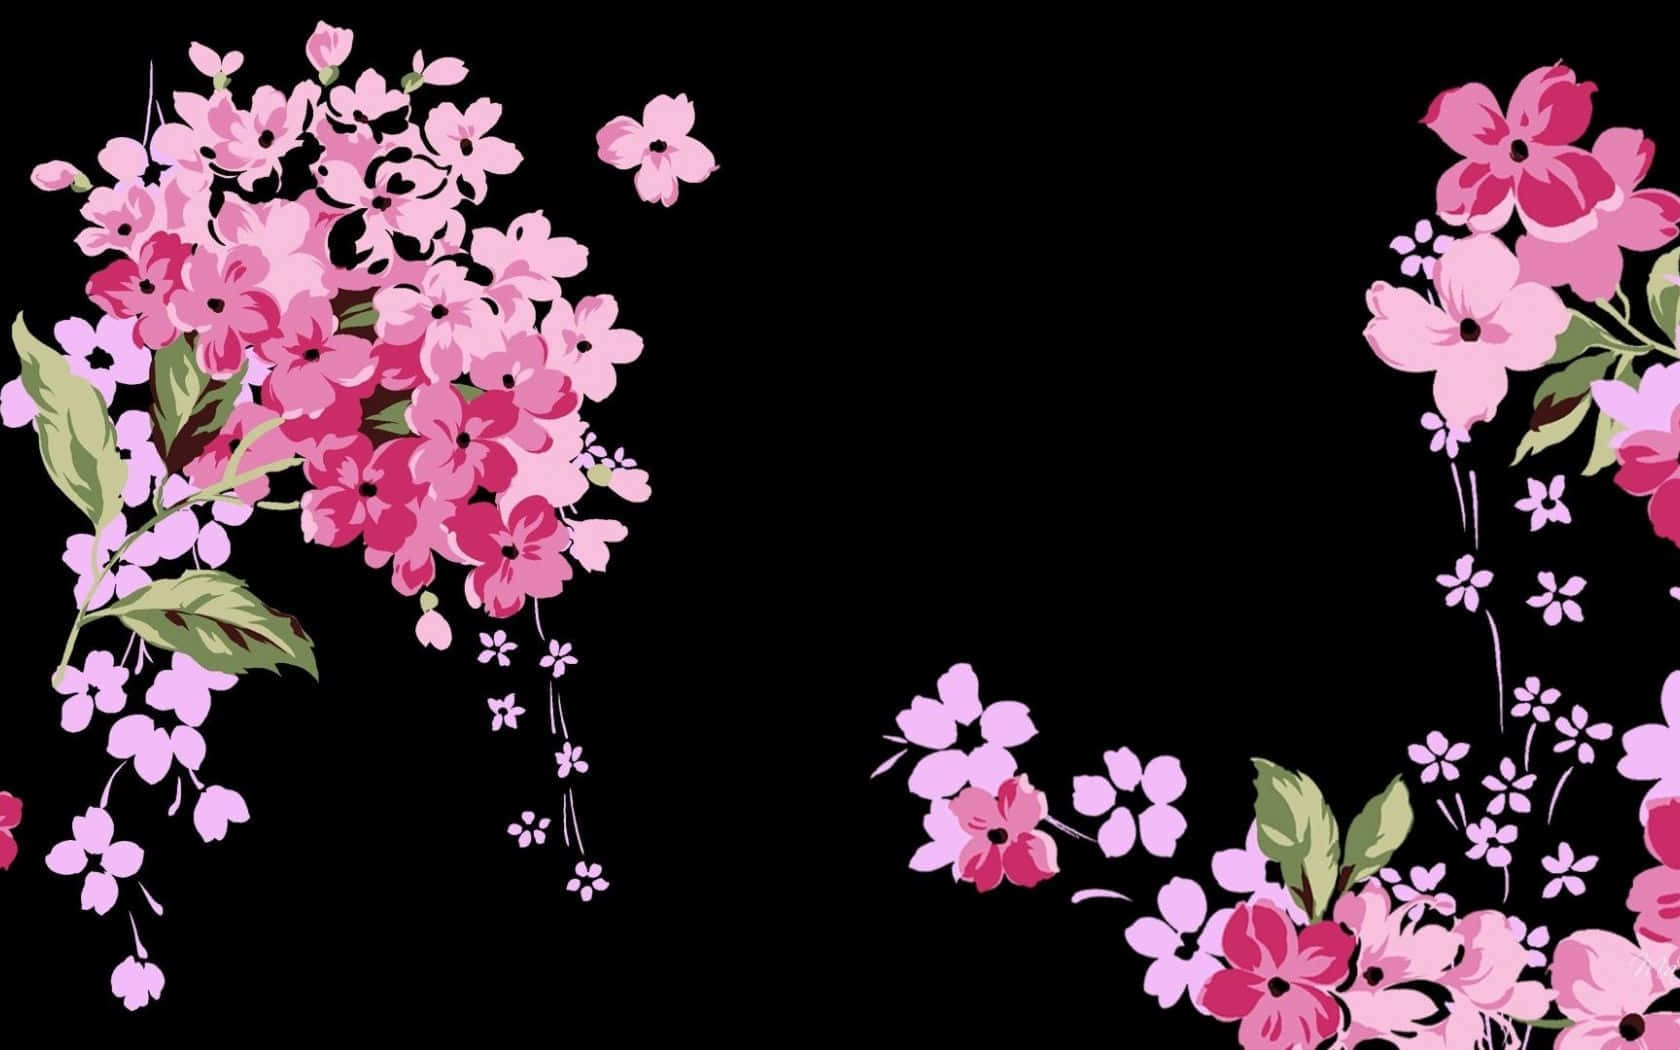 Einschwarzer Hintergrund Mit Pinken Blumen Darauf. Wallpaper